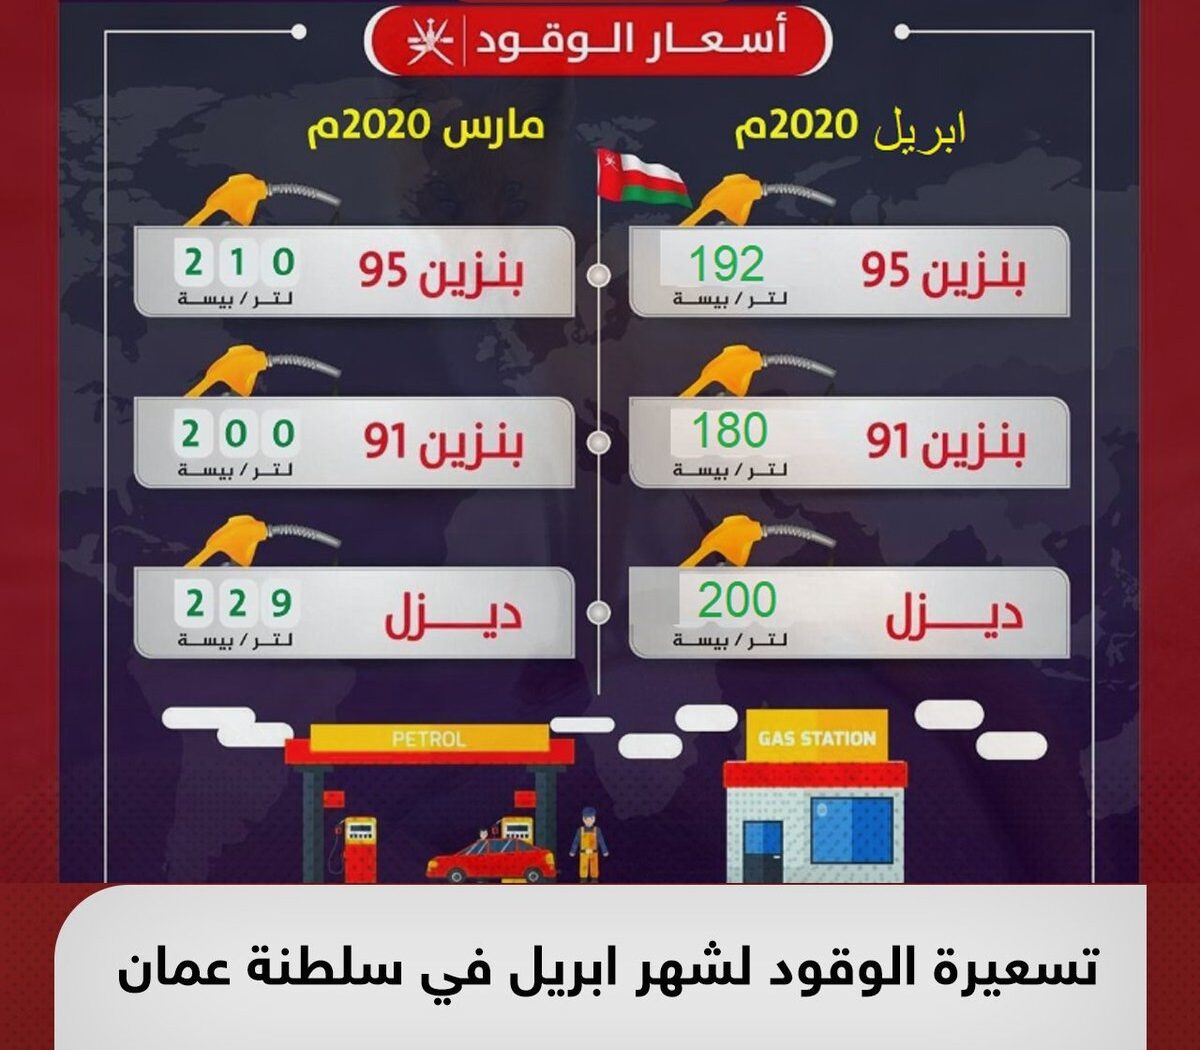 تسعيرة البترول لشهر ابريل 2020 سلطنة عمان